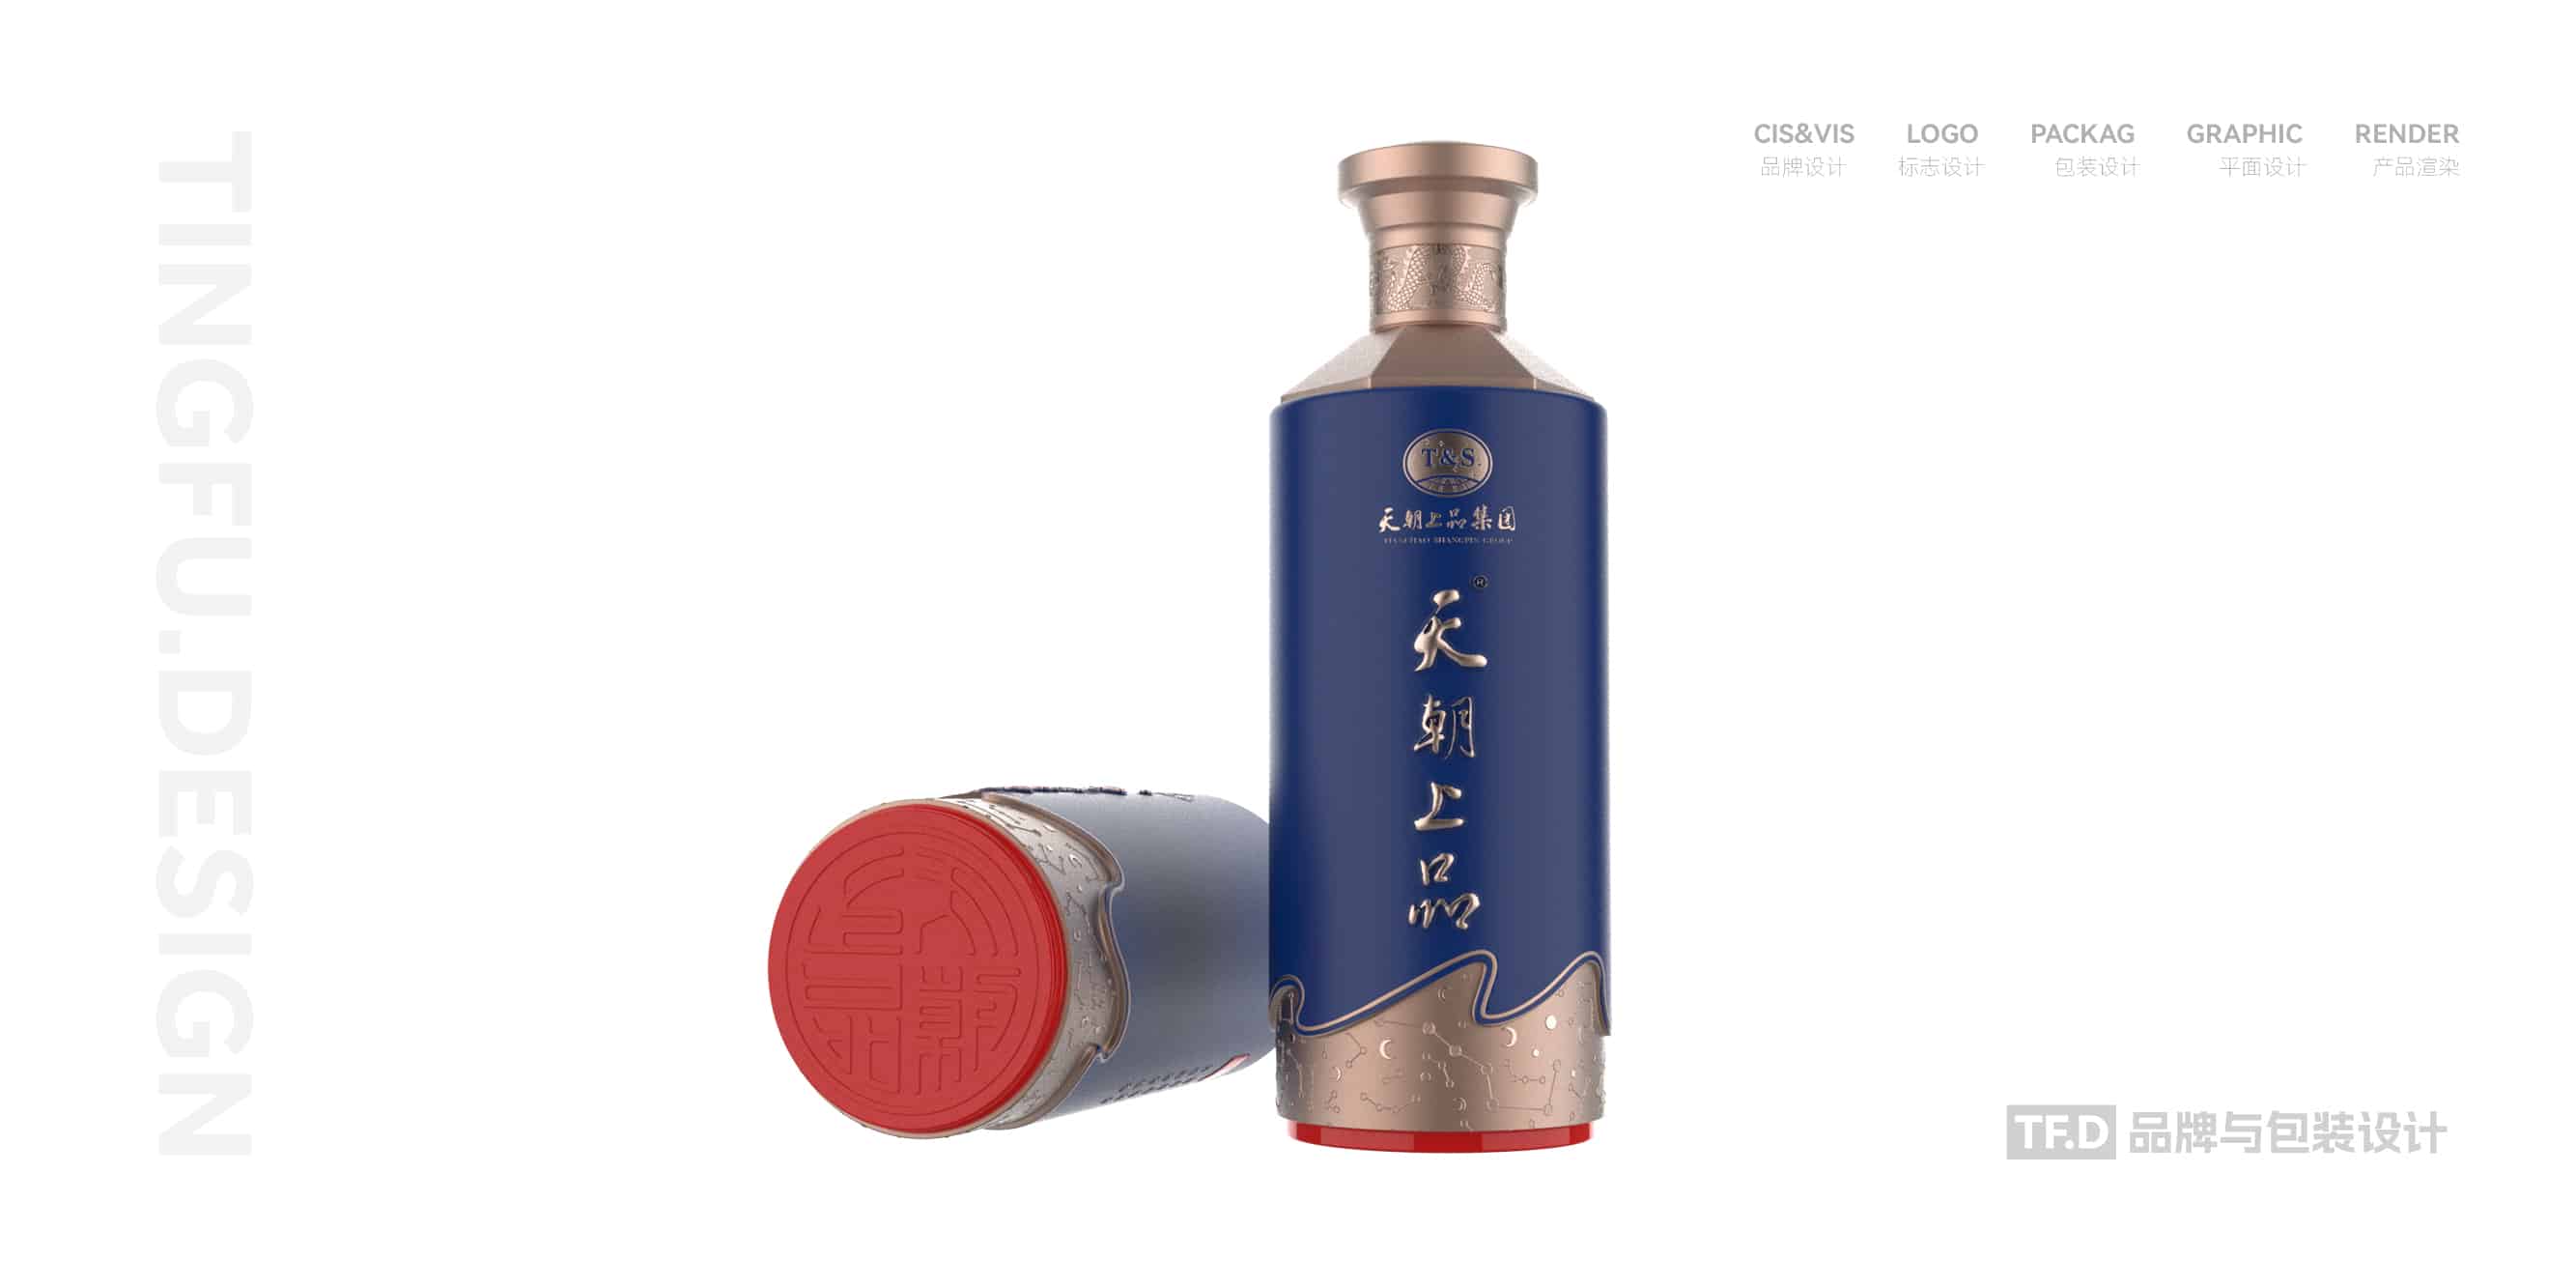 TFD品牌与包装设计-部分酒包装设计案例37-tuya.jpg